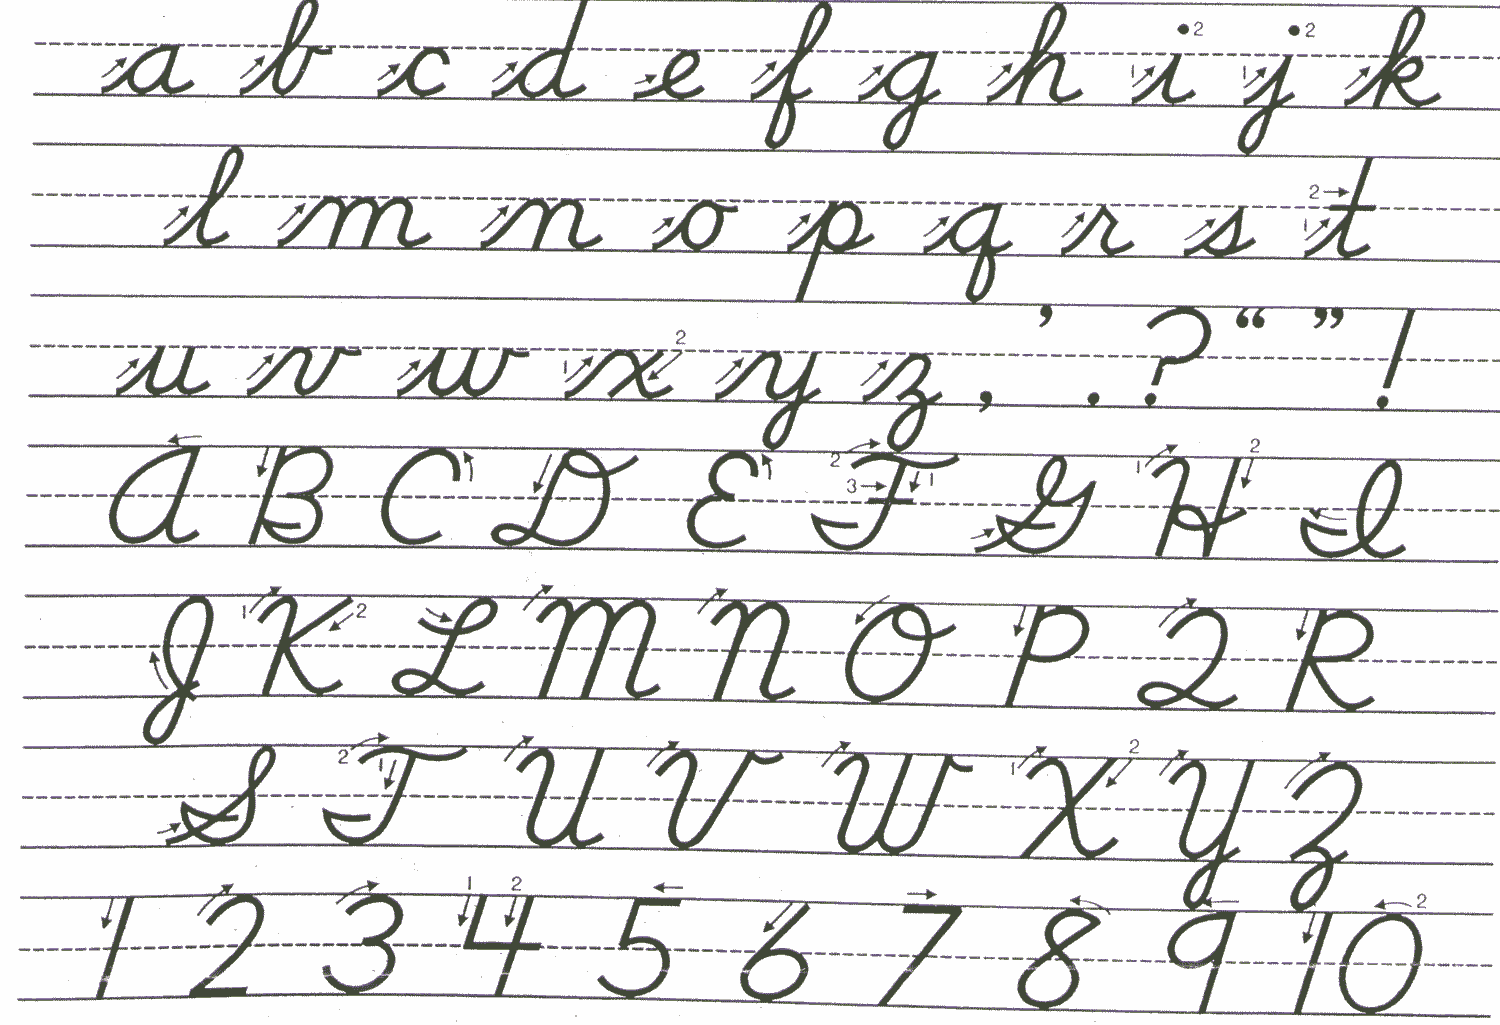 Lamont beagle: cursive Writing exercises